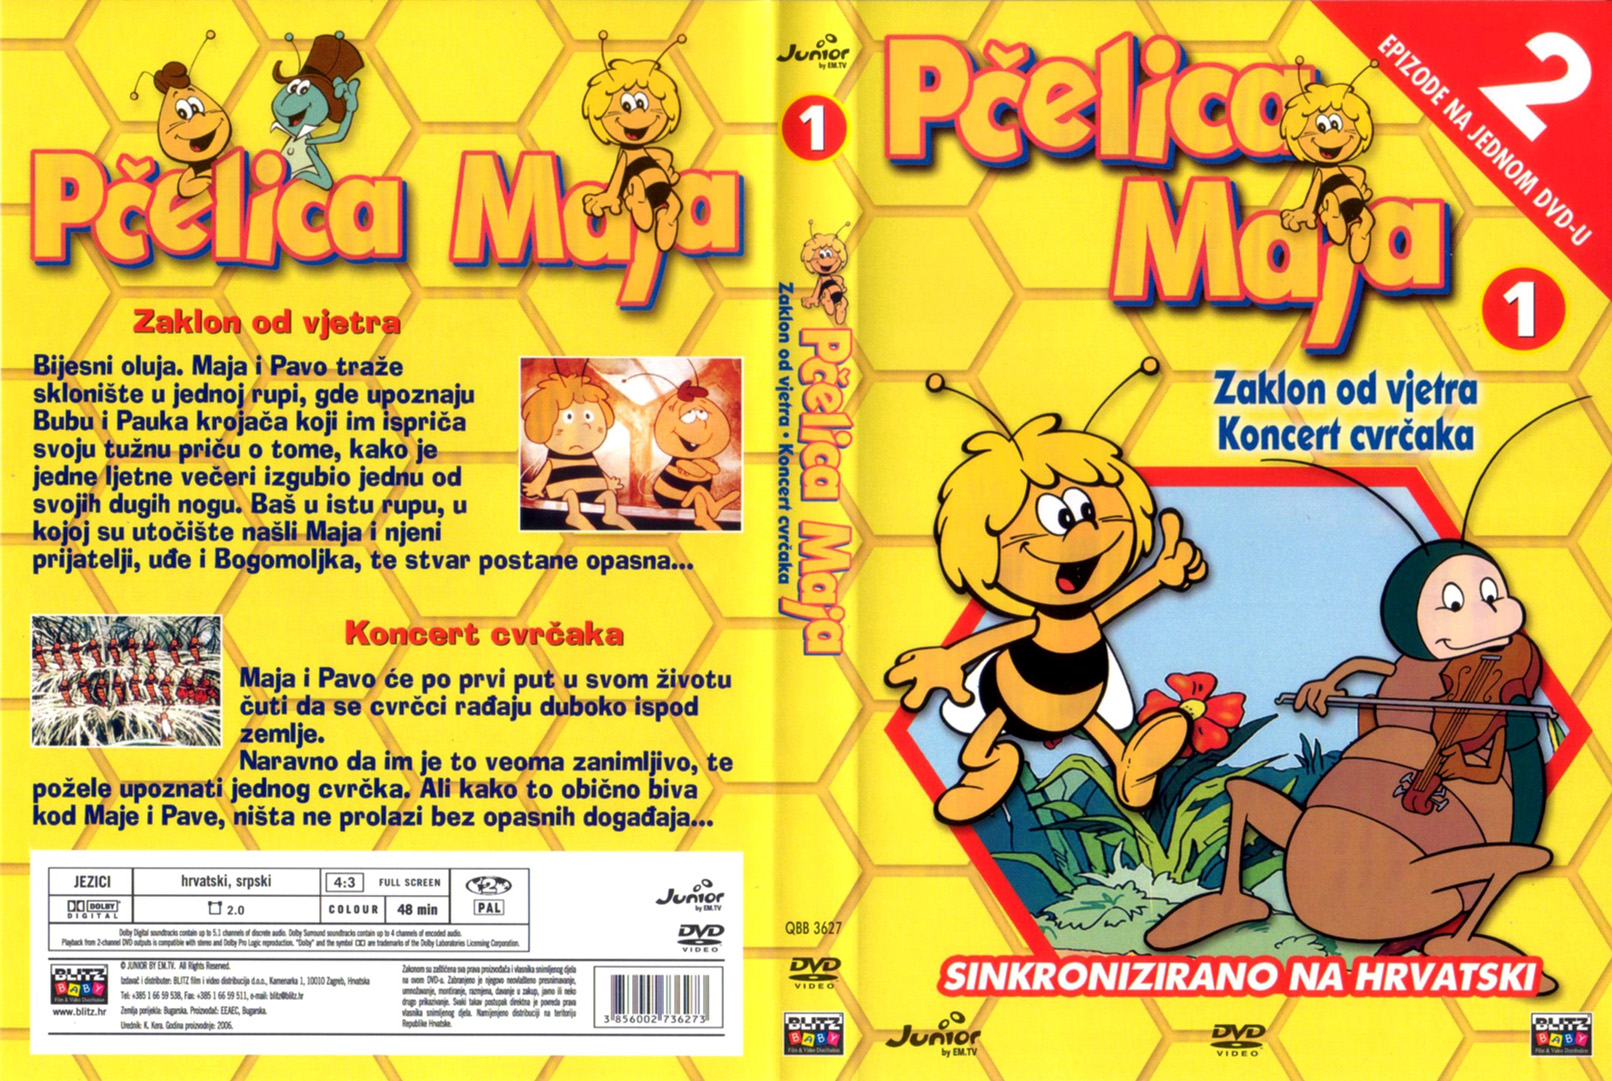 Click to view full size image -  DVD Cover - P - pcelica_maja_1_dvd - pcelica_maja_1_dvd.jpg